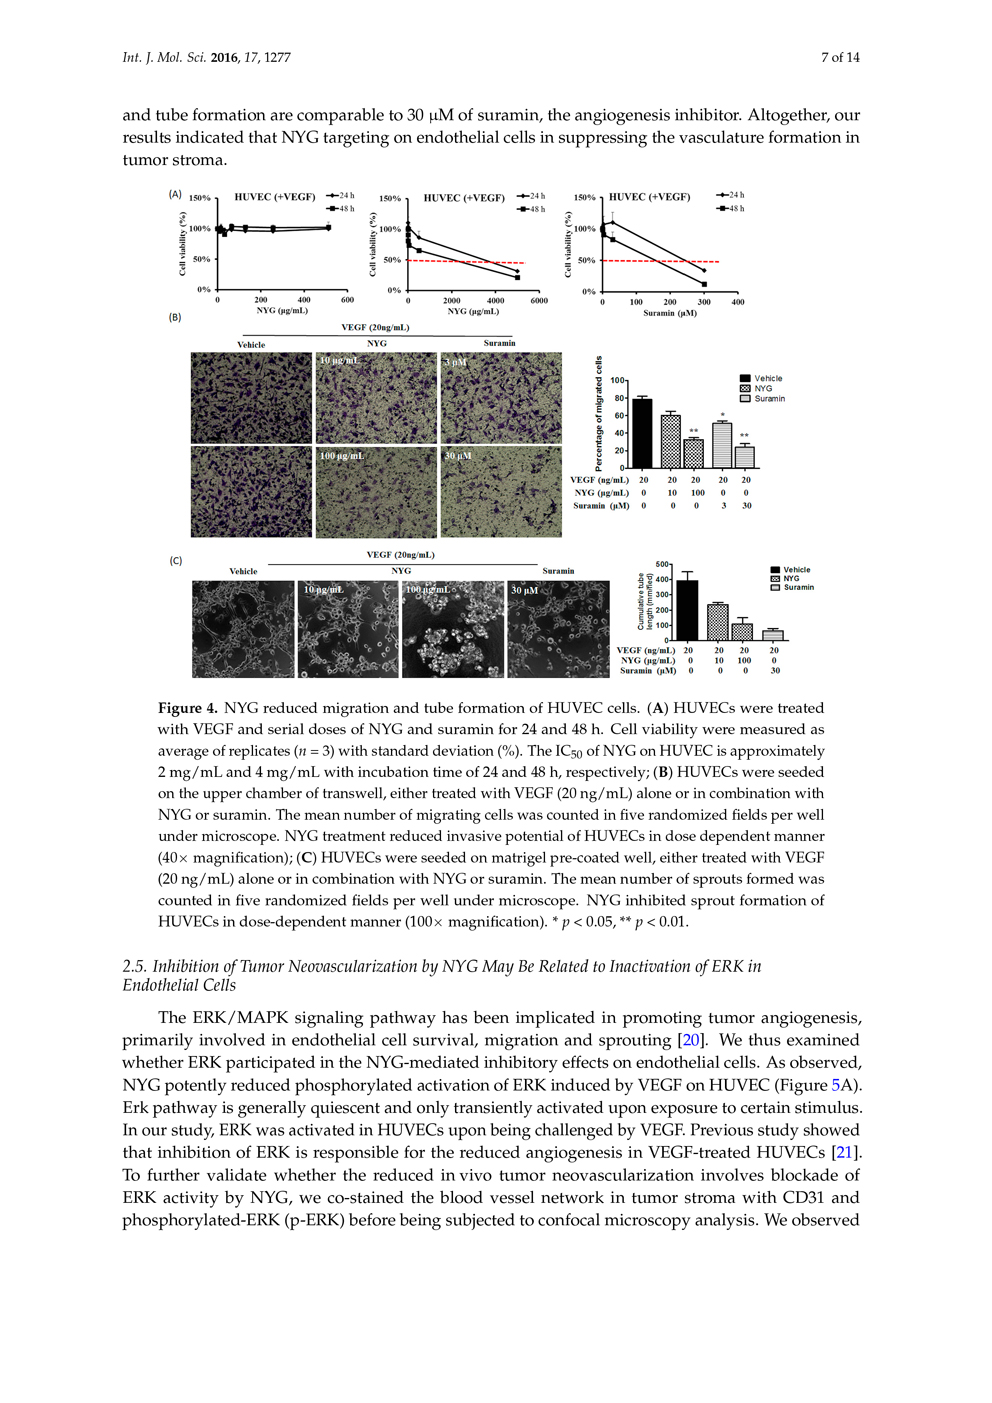 ノコギリヤシ色素の肝細胞がんへの補助療法の可能性 ページ7